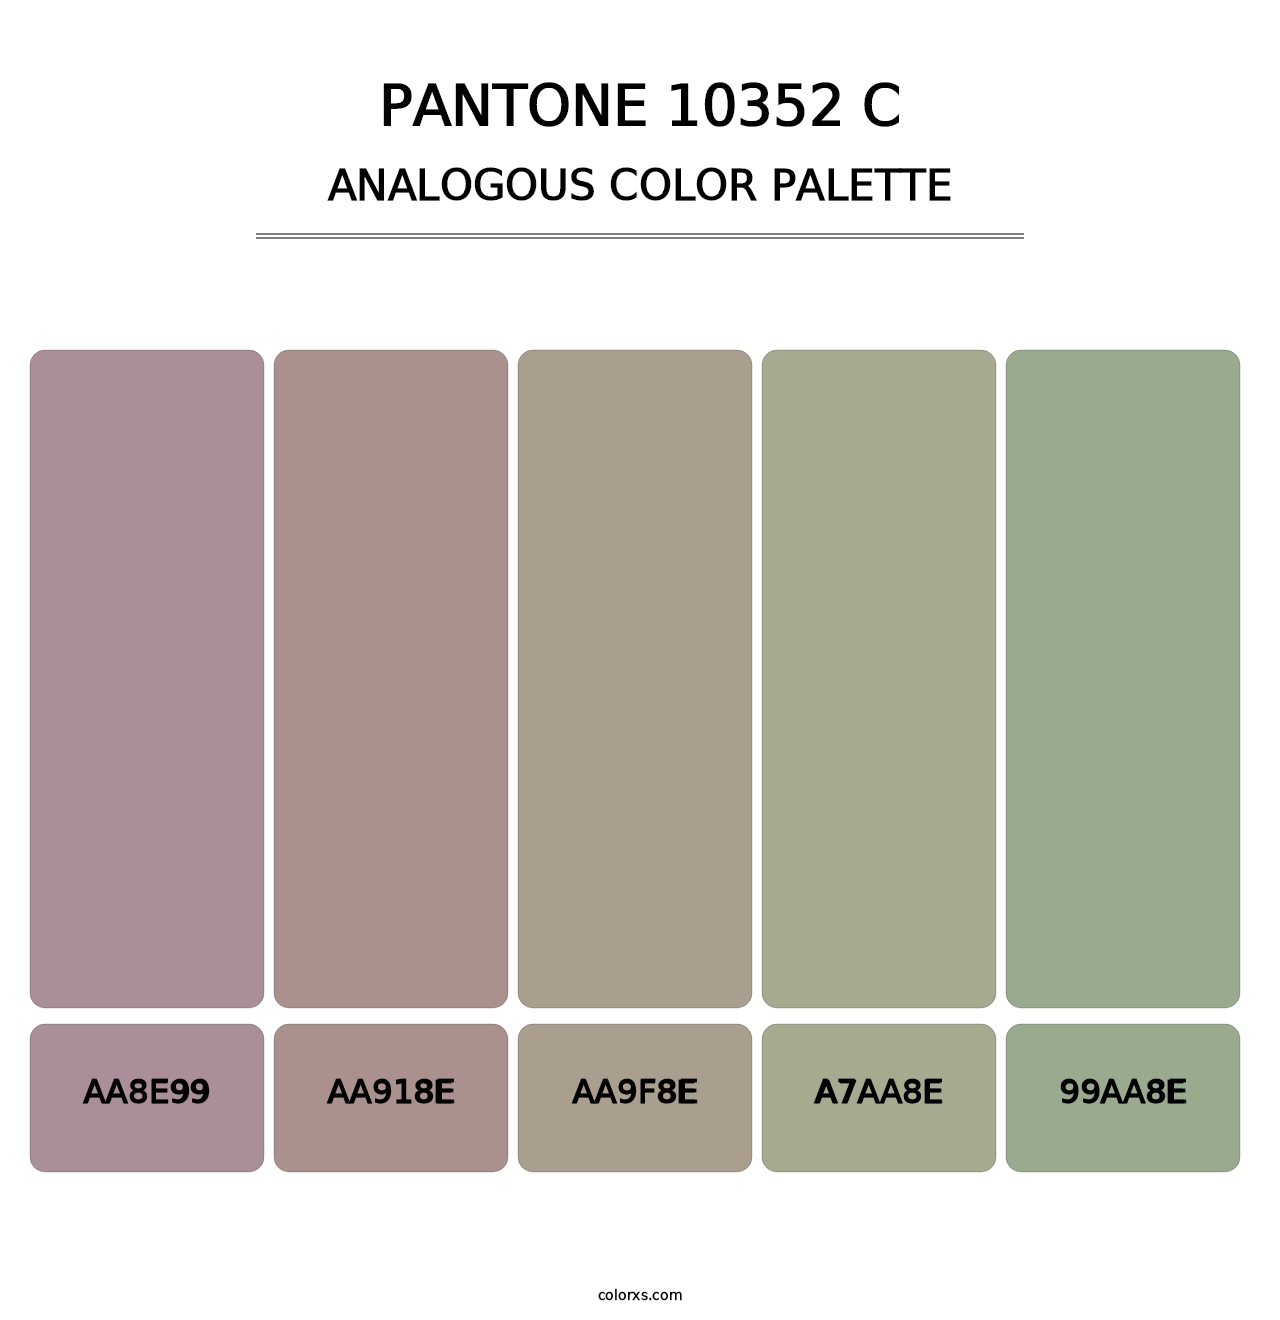 PANTONE 10352 C - Analogous Color Palette